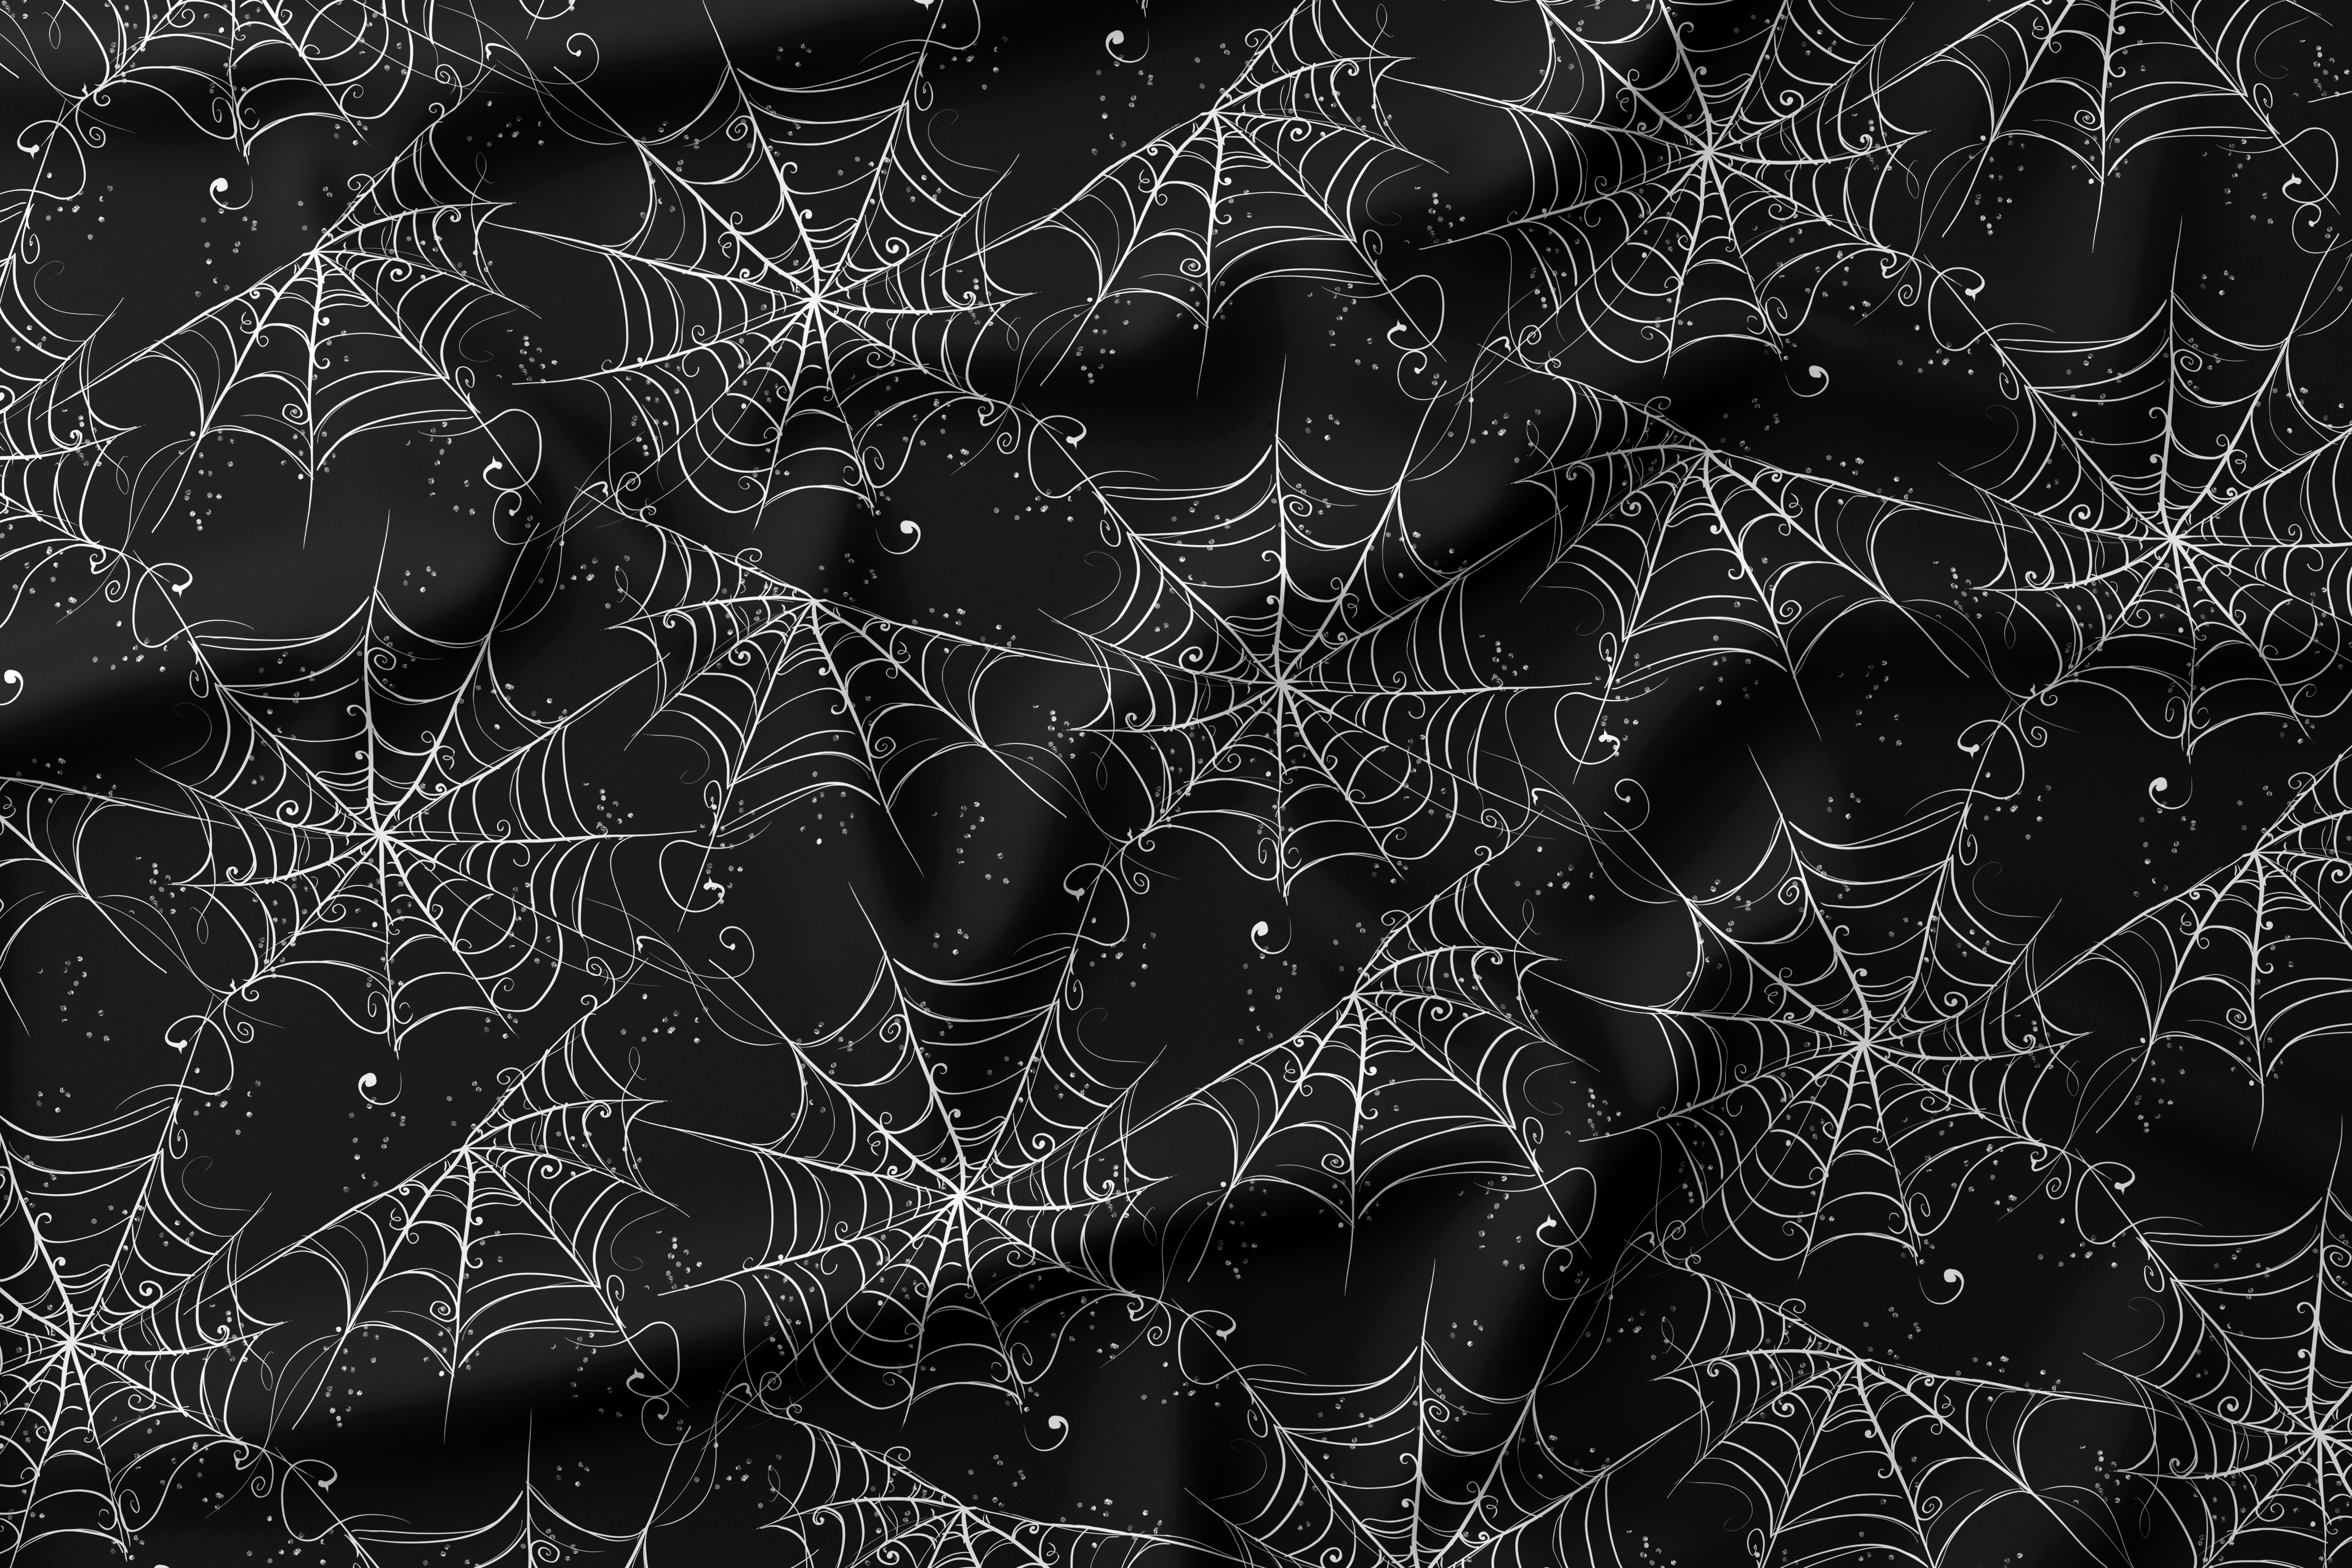 French Terry Baumwolle Stoff Halloween Spider Spinnenweben Schwarz Weiß 160 cm WB Eigenproduktion